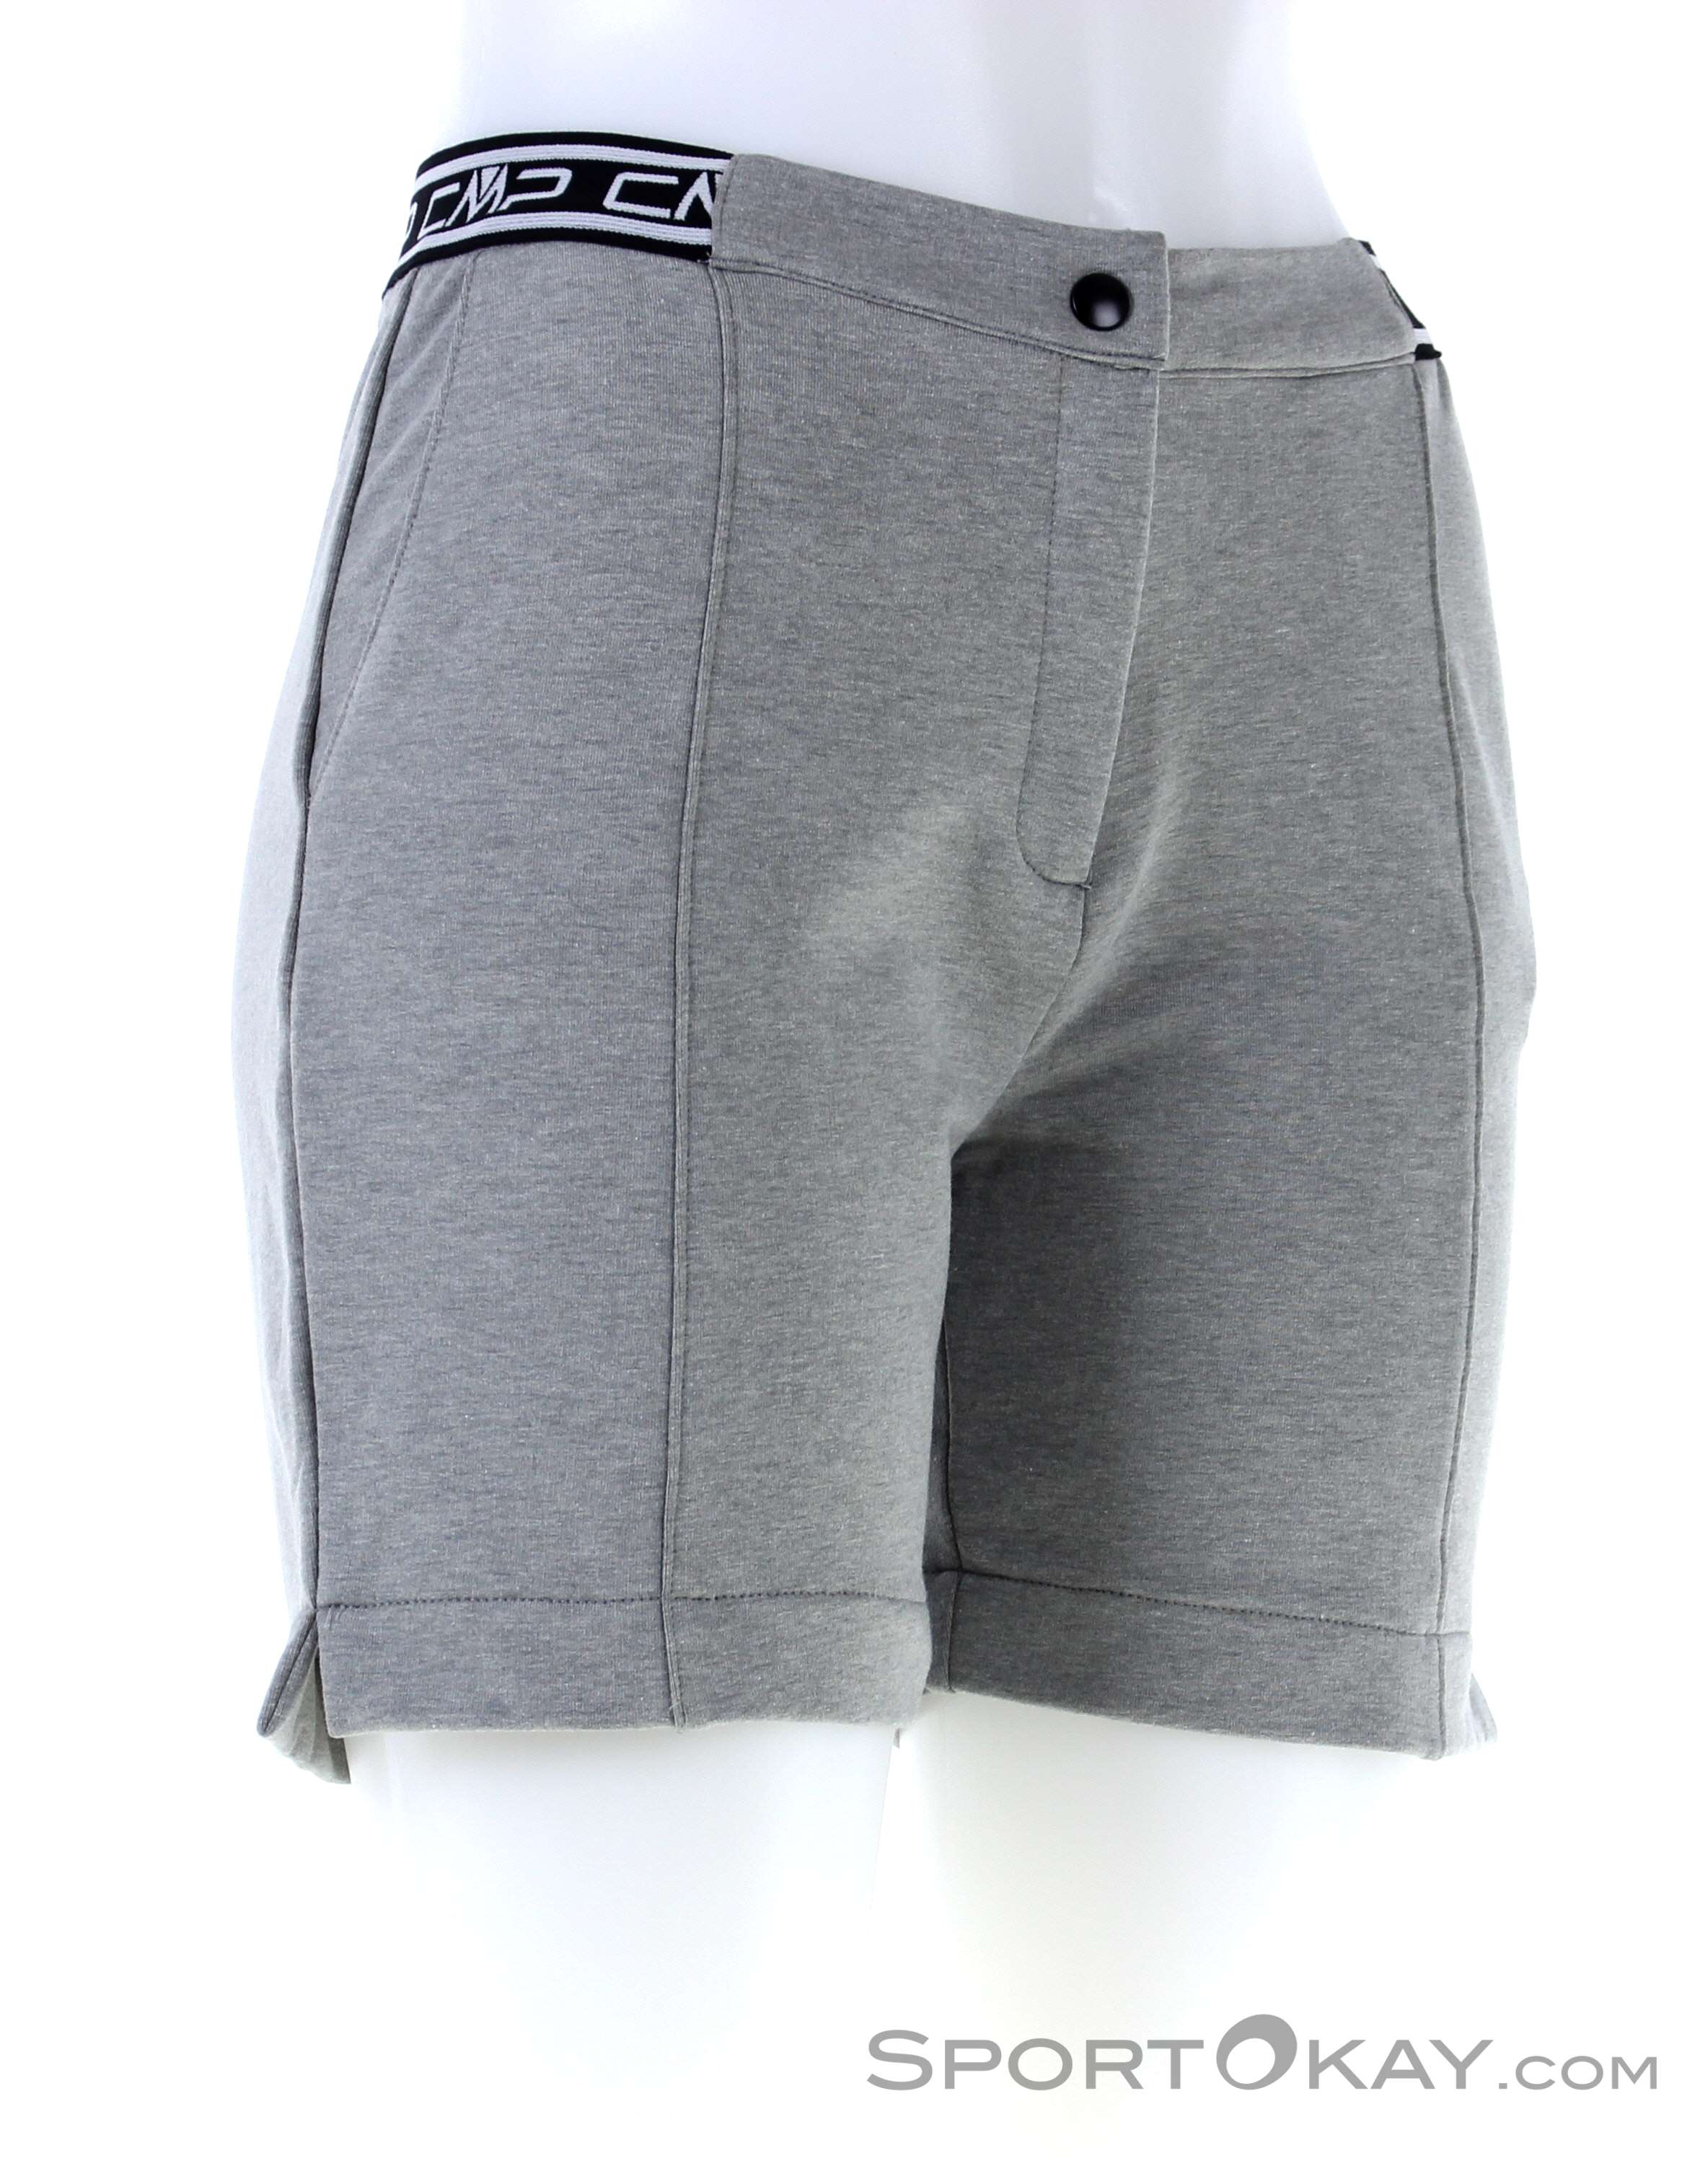 Outdoor - Hosen Alle Damen - Outdoorshort Cotton Outdoorbekleidung - - Shorts Stretch CMP